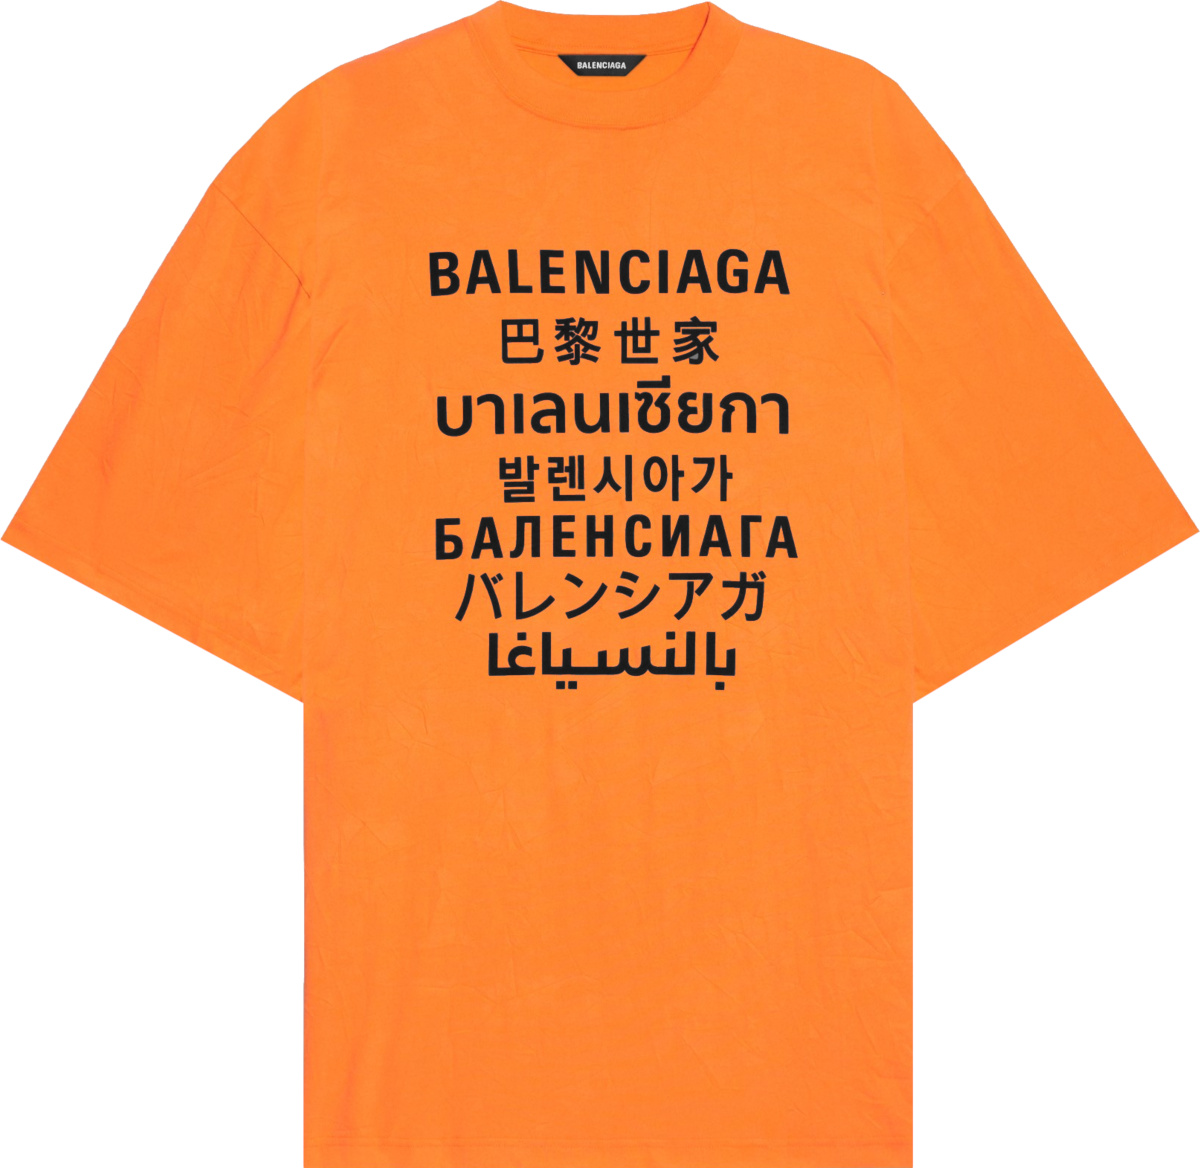 Balenciaga Orange 'Languages' T-Shirt | Incorporated Style